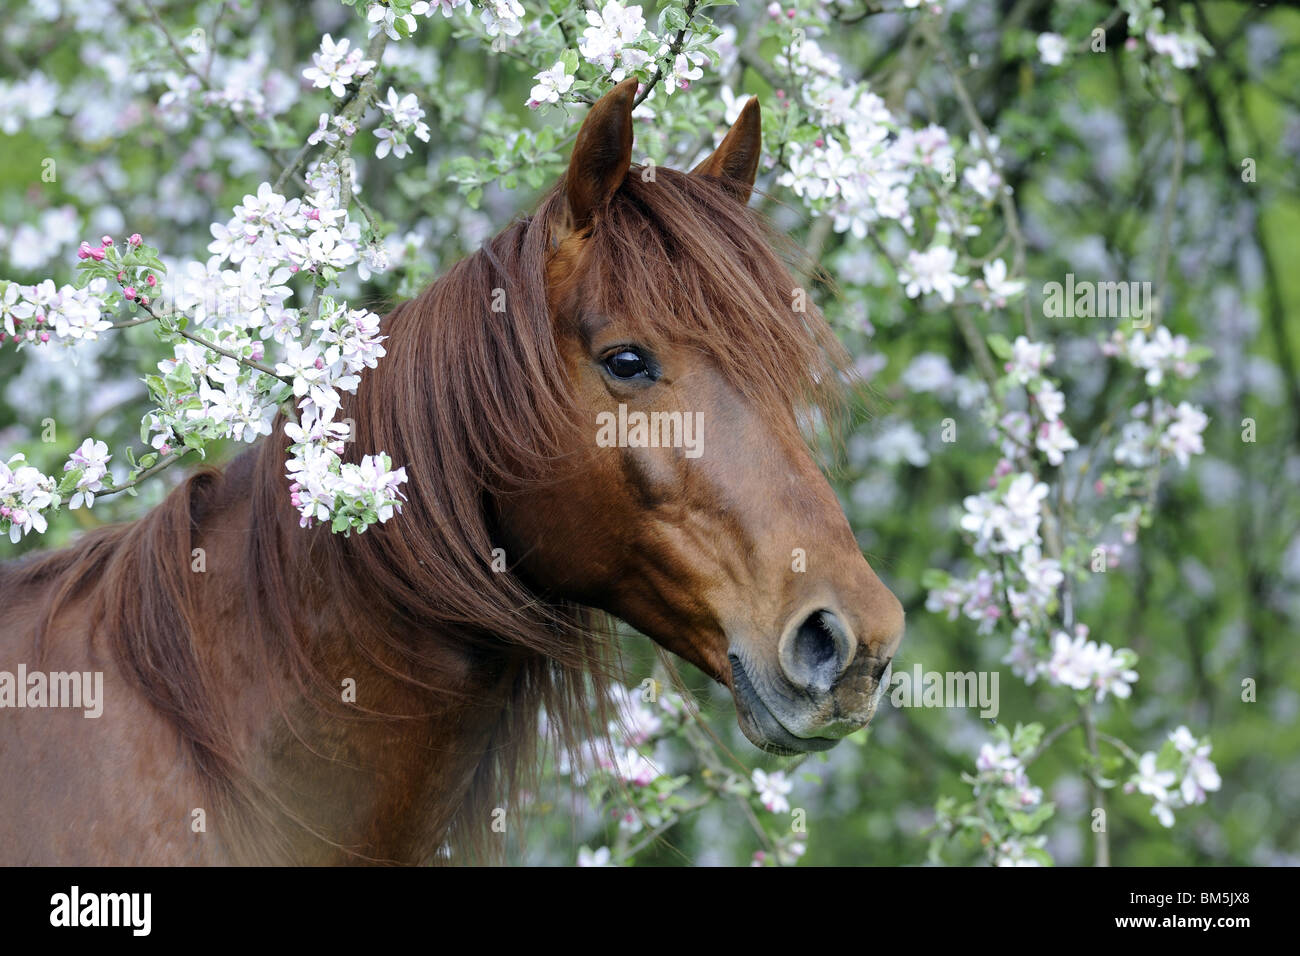 Missouri Fox Trotter (Equus ferus caballus), portrait of stallion looking through flowering twigs. Stock Photo